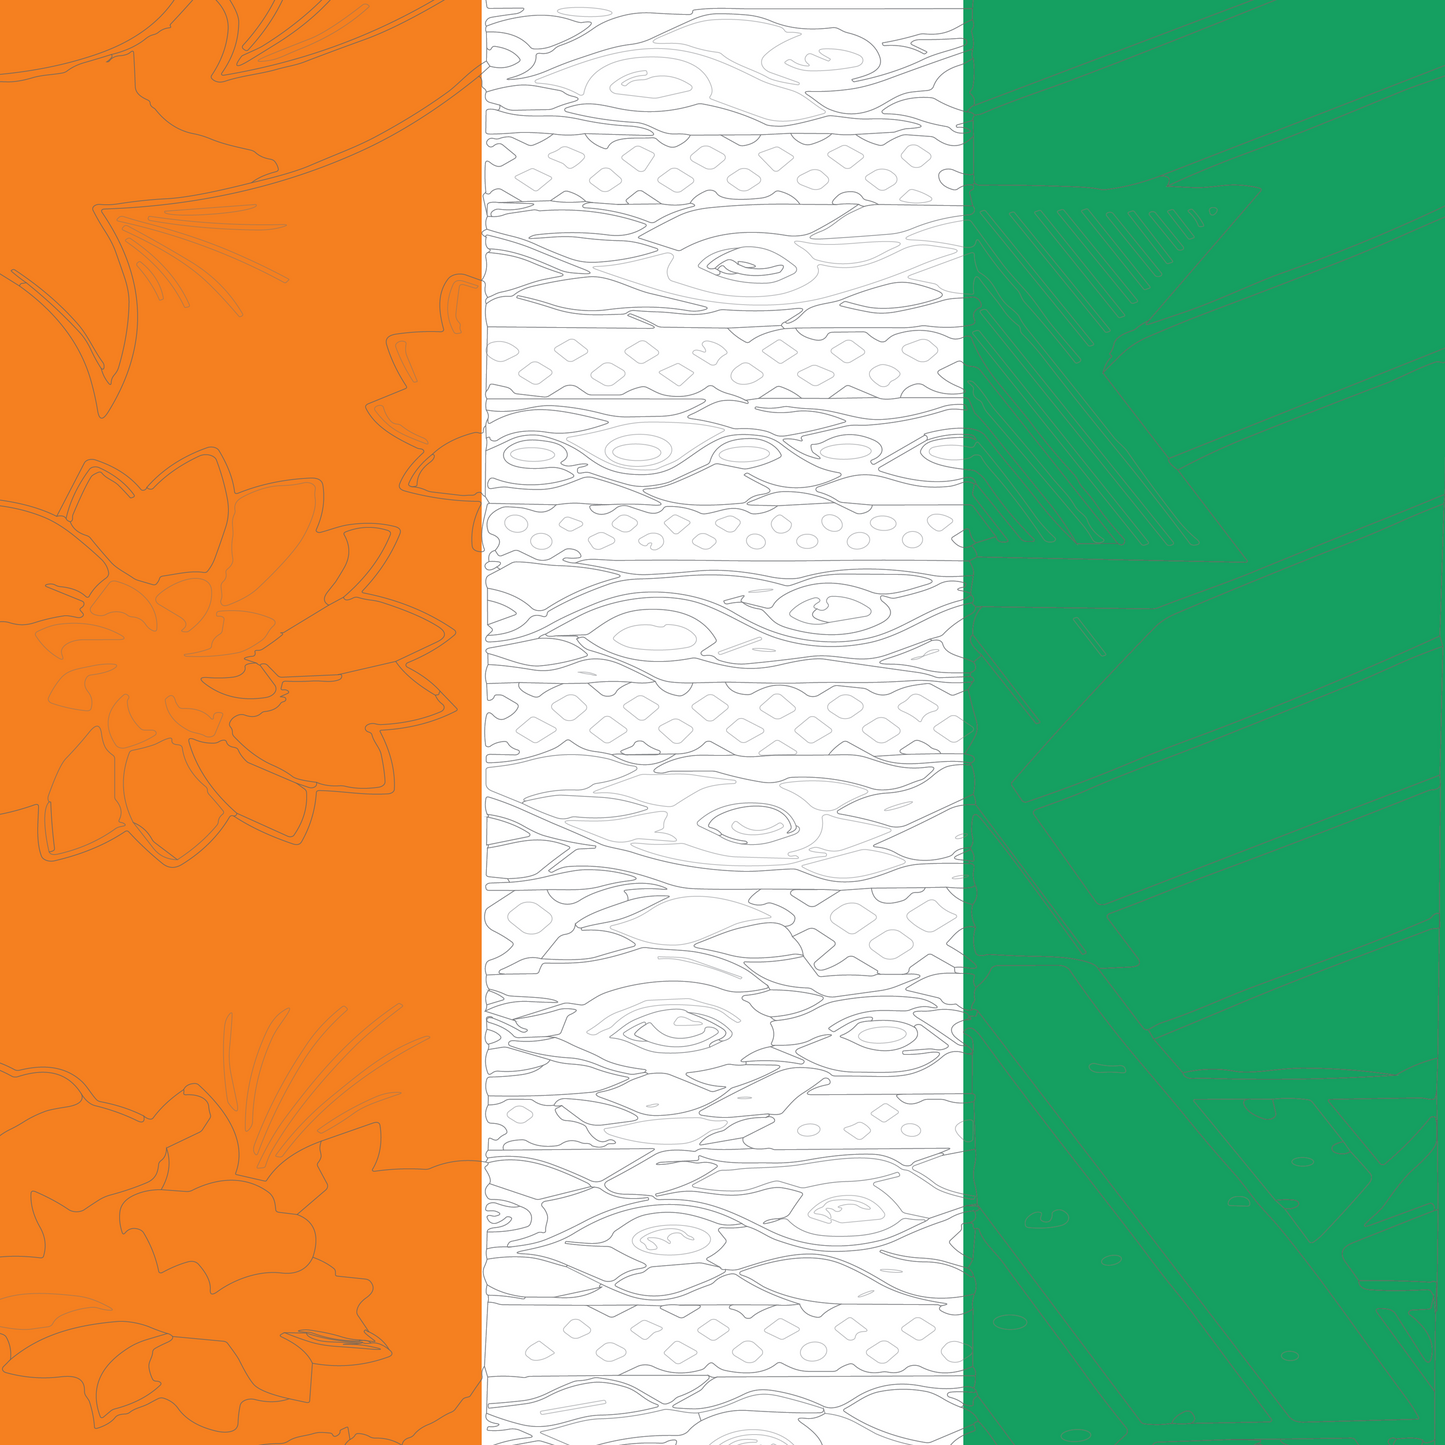 Ivory-Coast Flag Bandana